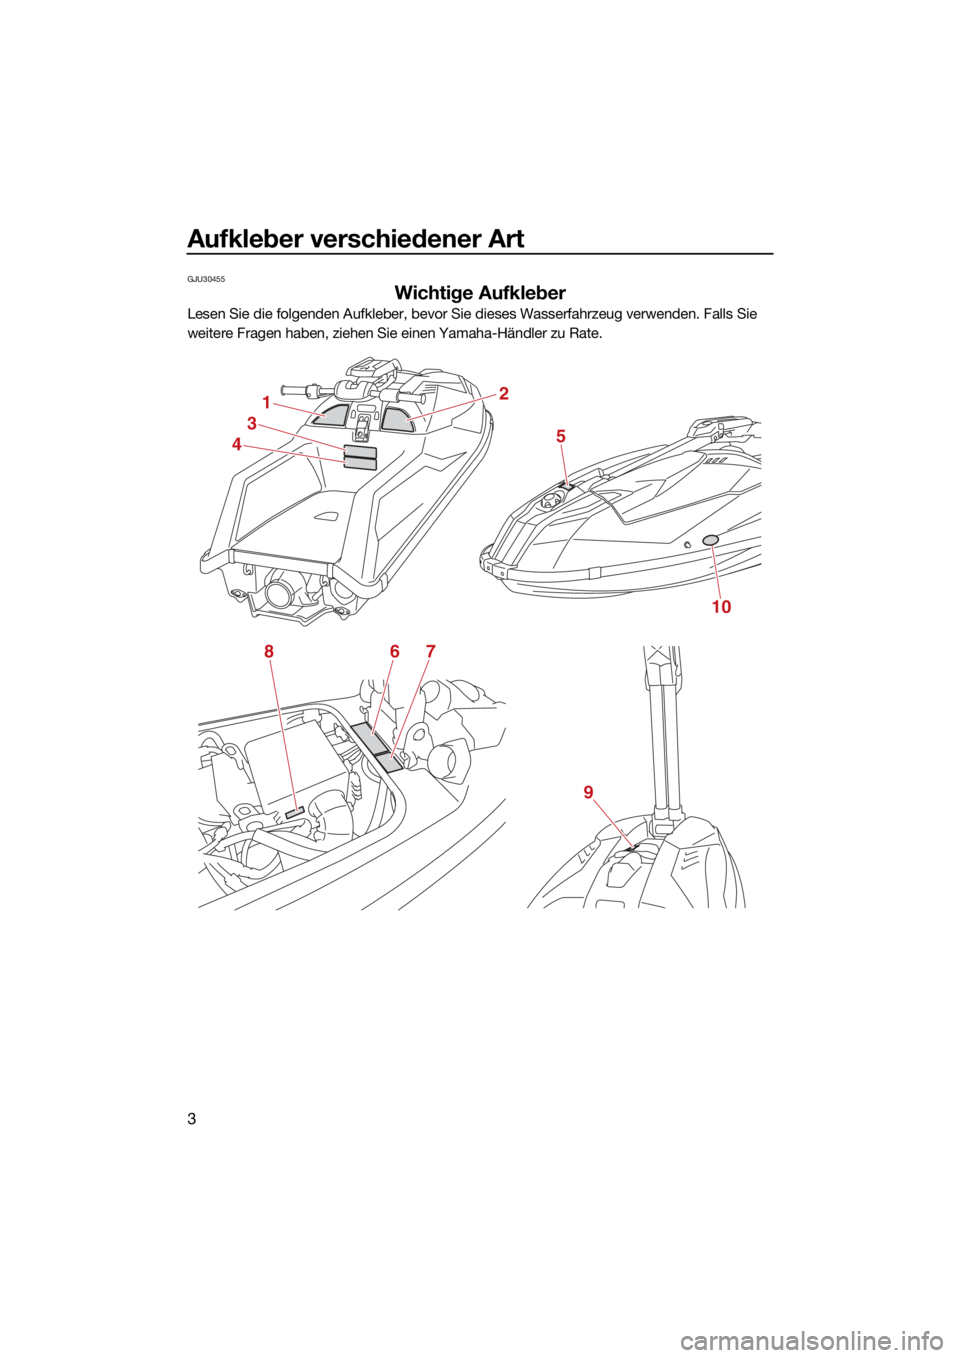 YAMAHA SUPERJET 2021  Betriebsanleitungen (in German) Aufkleber verschiedener Art
3
GJU30455
Wichtige Aufkleber
Lesen Sie die folgenden Aufkleber, bevor Sie dieses Wasserfahrzeug verwenden. Falls Sie 
weitere Fragen haben, ziehen Sie einen Yamaha-Händle